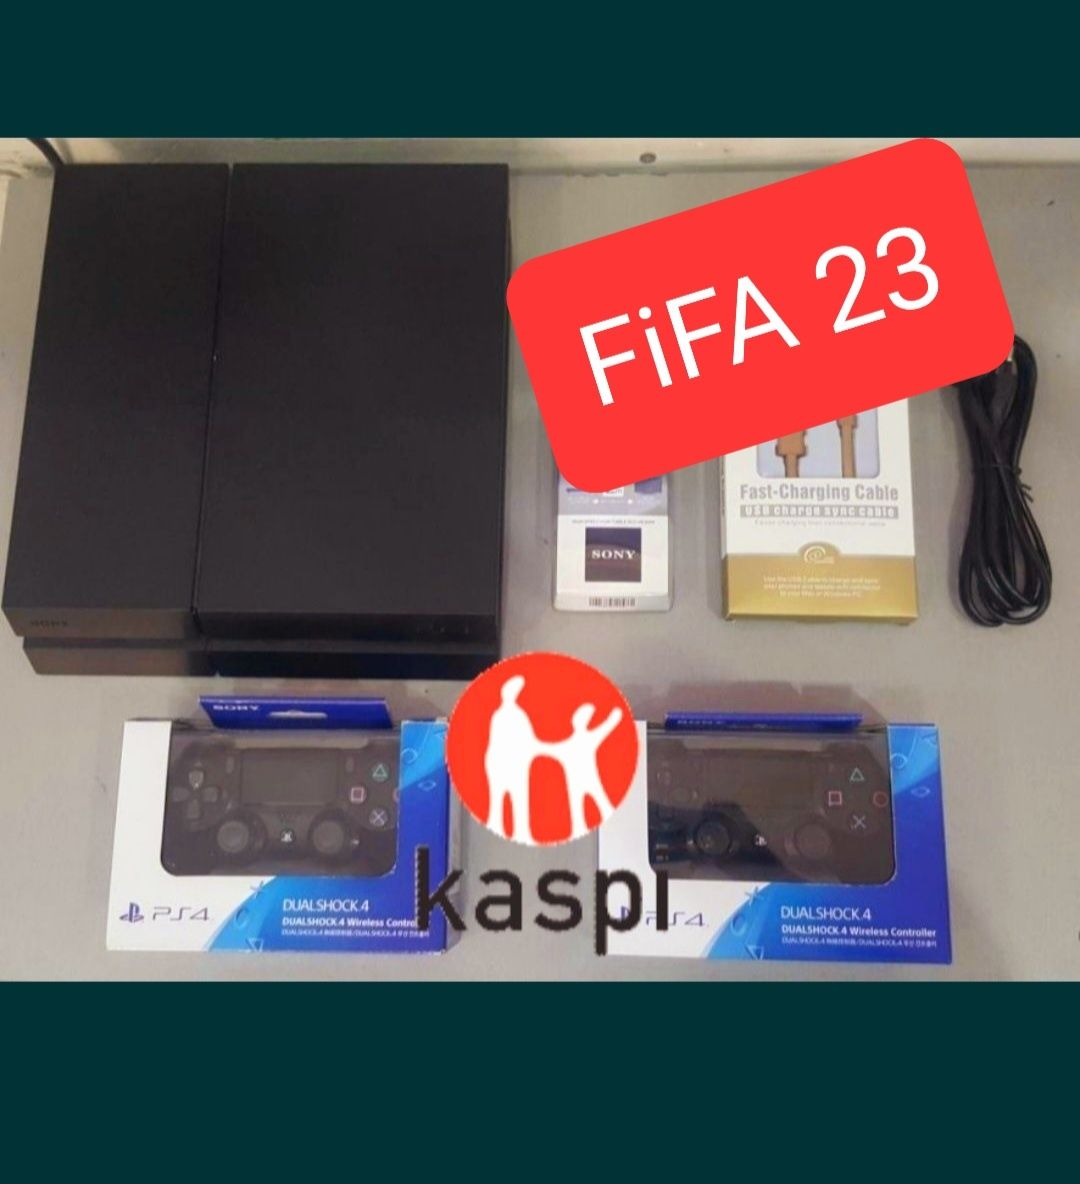 Sony 4 в наличии 2 джойстика 10 игр Fifa 23 гарантией Kaspi